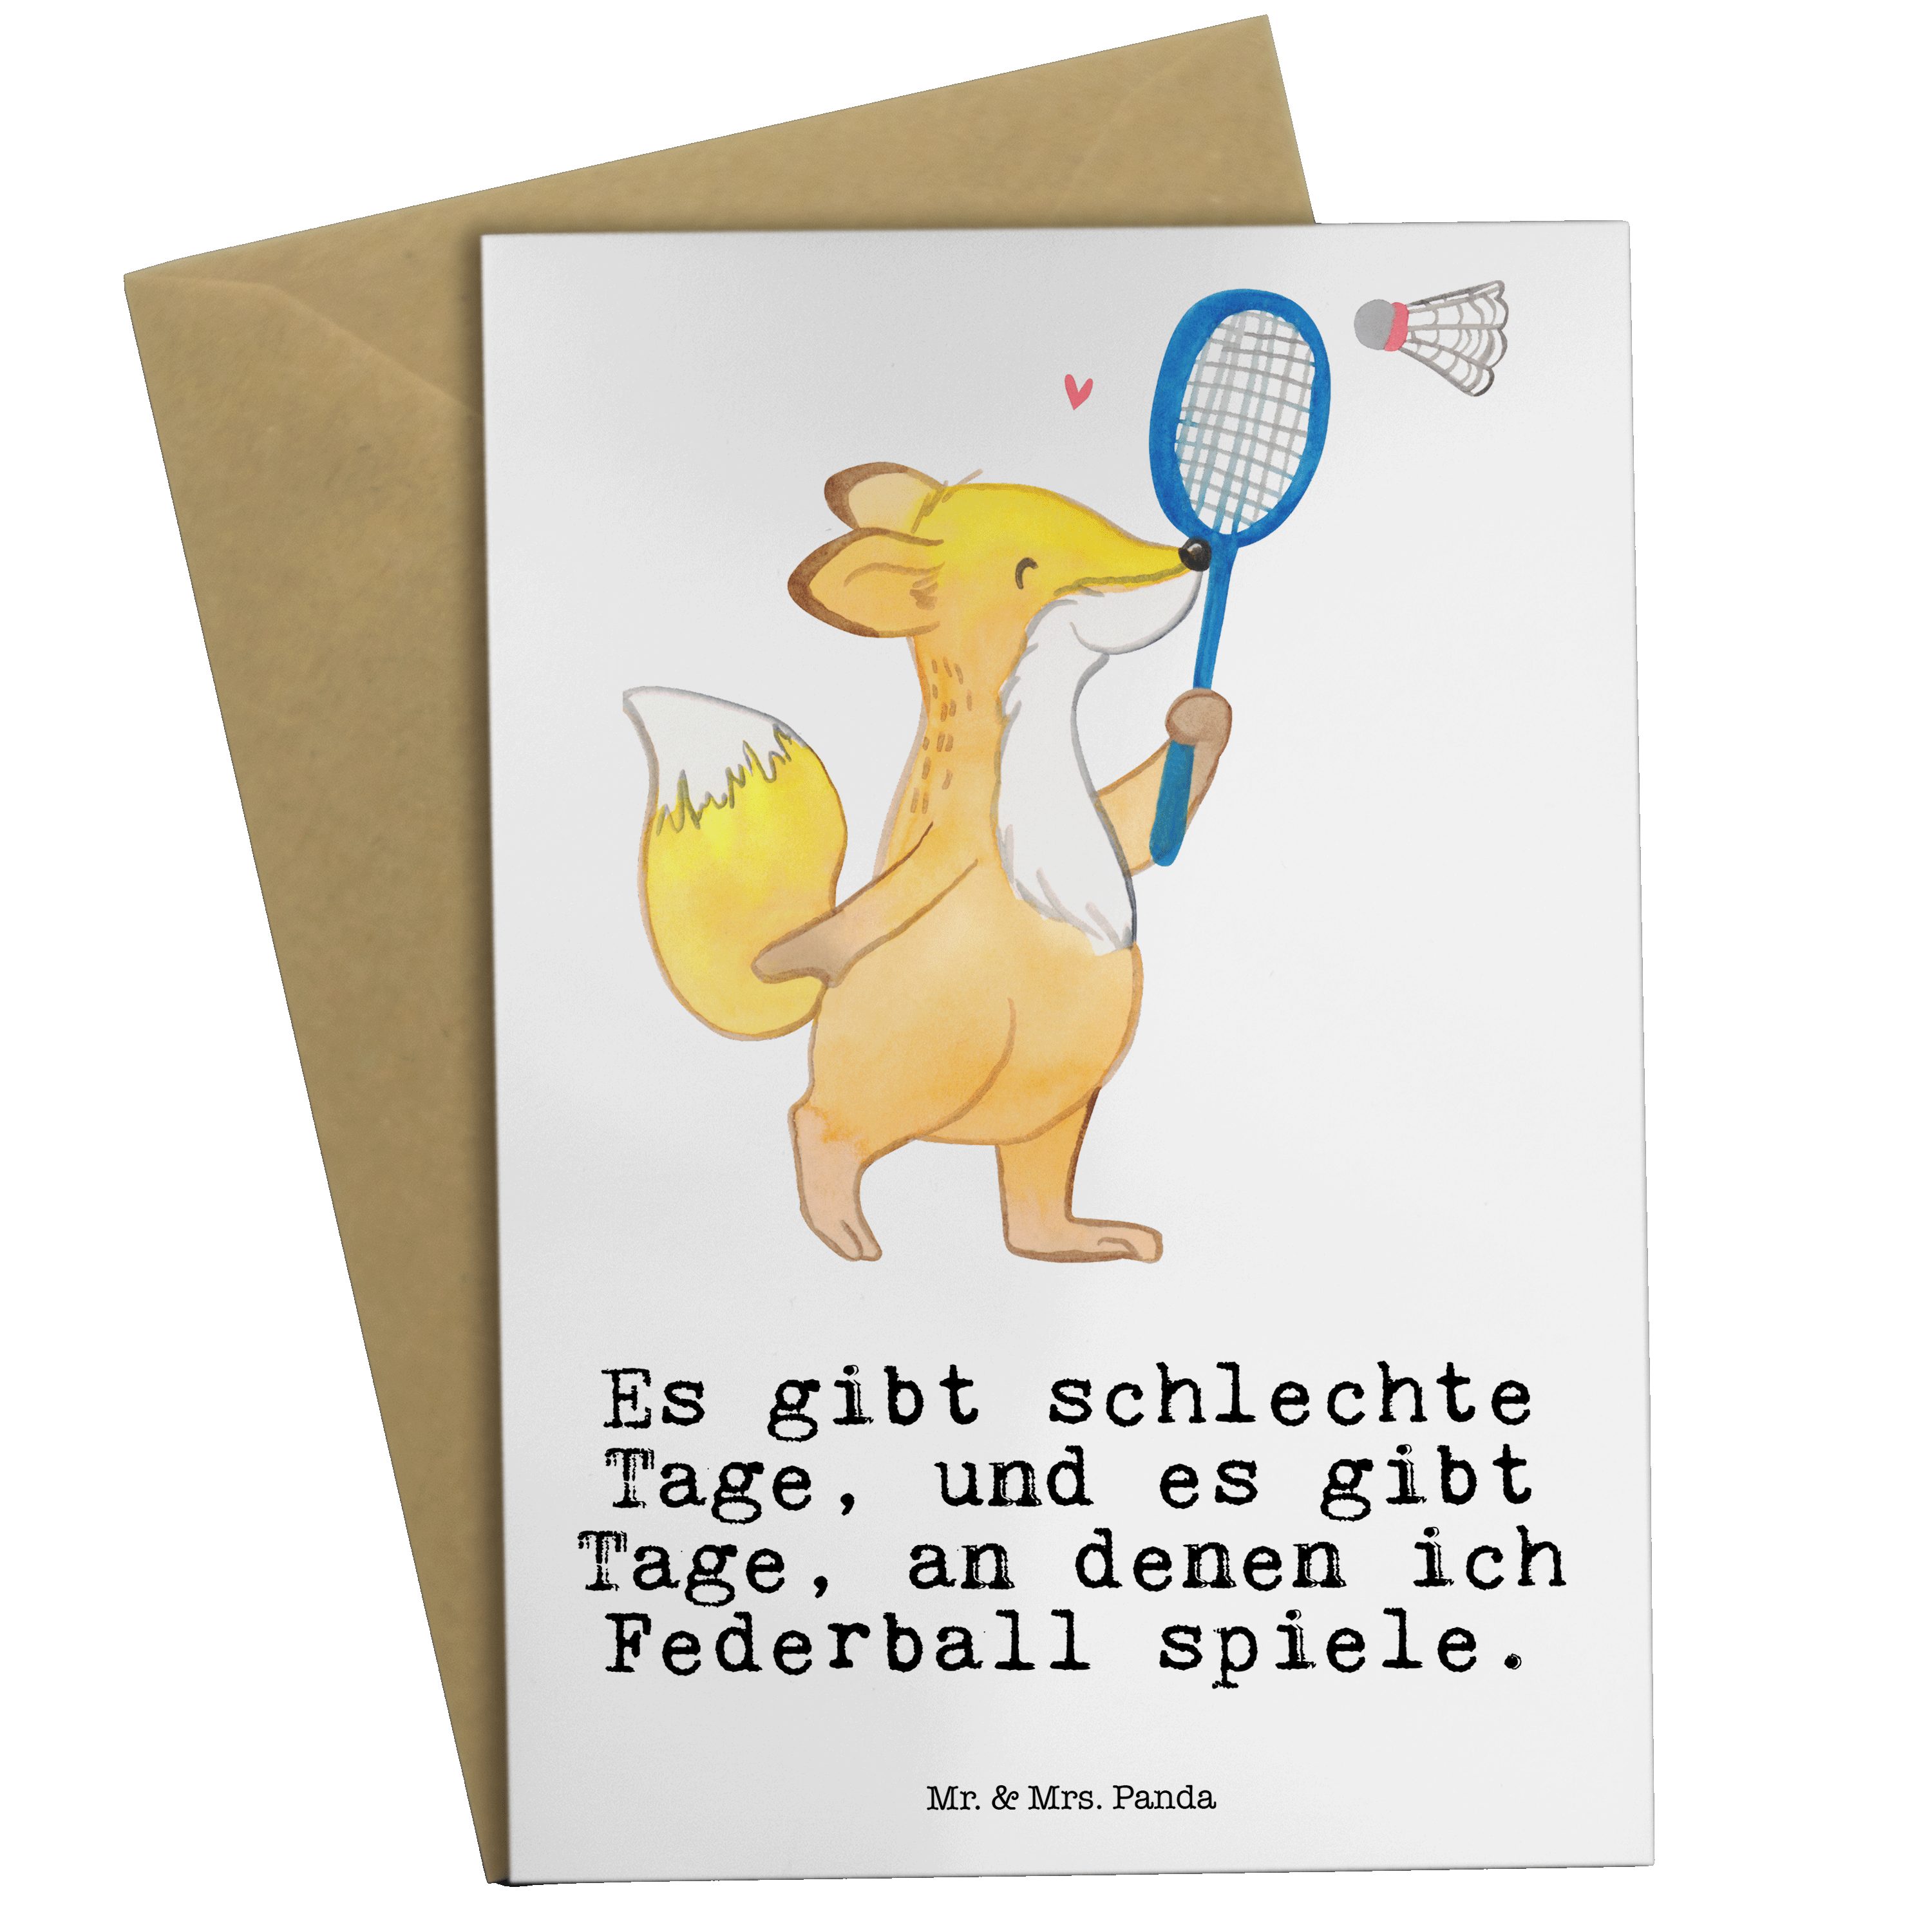 Mr. & Mrs. Panda Grußkarte Fuchs Federball spielen Tage - Weiß - Geschenk, Glückwunschkarte, Geb